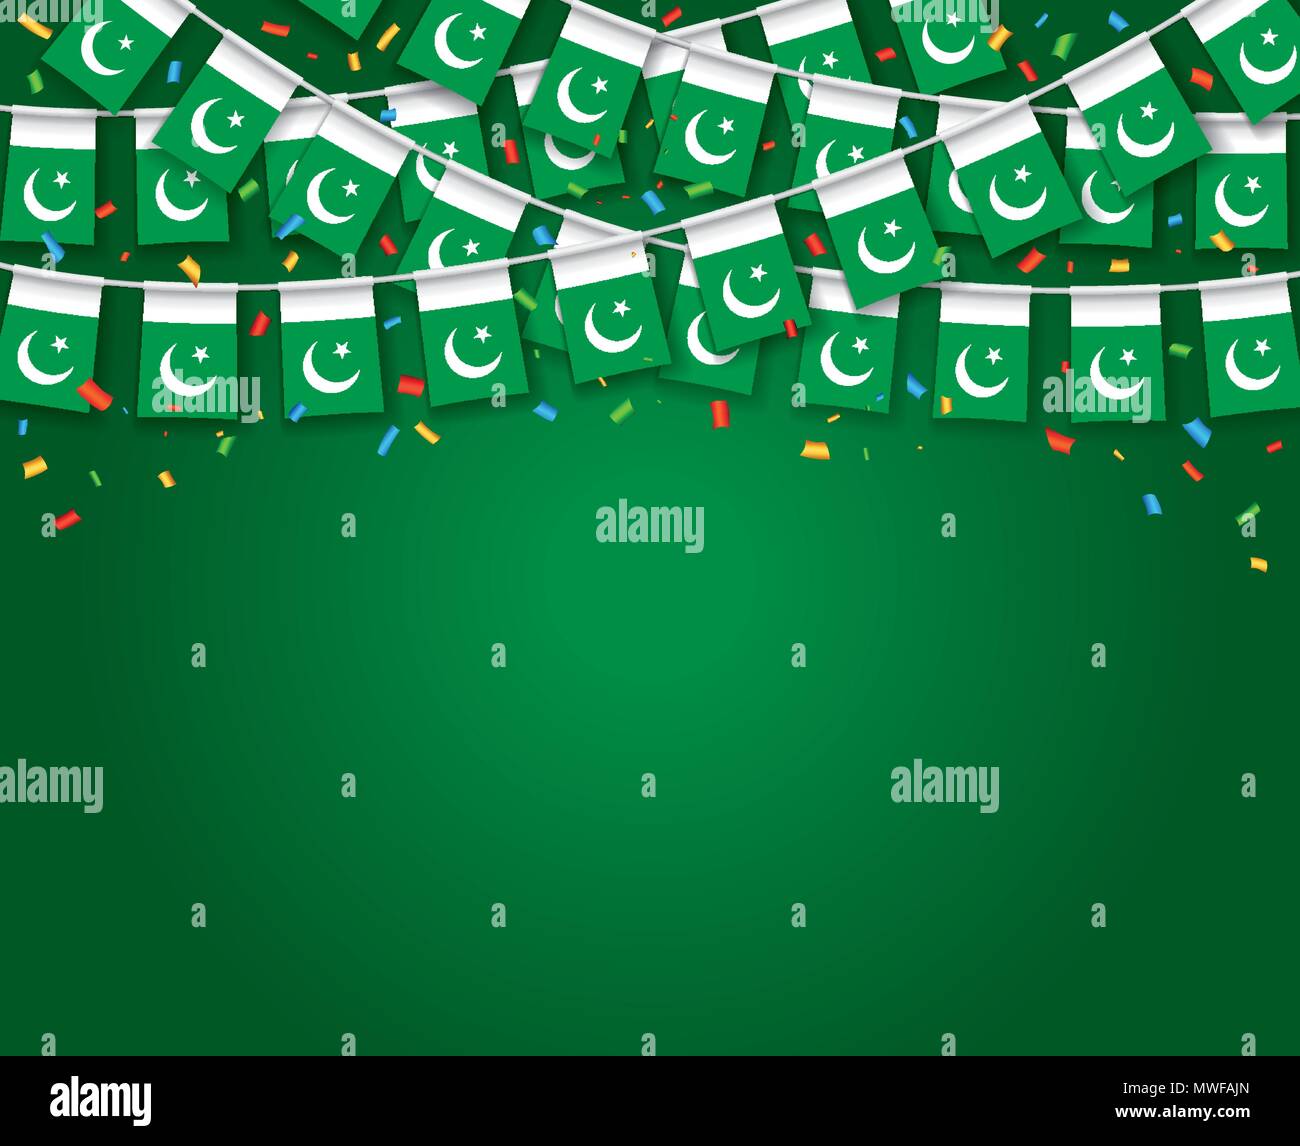 Garland bandiere con sfondo verde scuro Banner appesi Bunting Flags per il Pakistan Independence Day celebrazione. Illustrazione Vettoriale Illustrazione Vettoriale